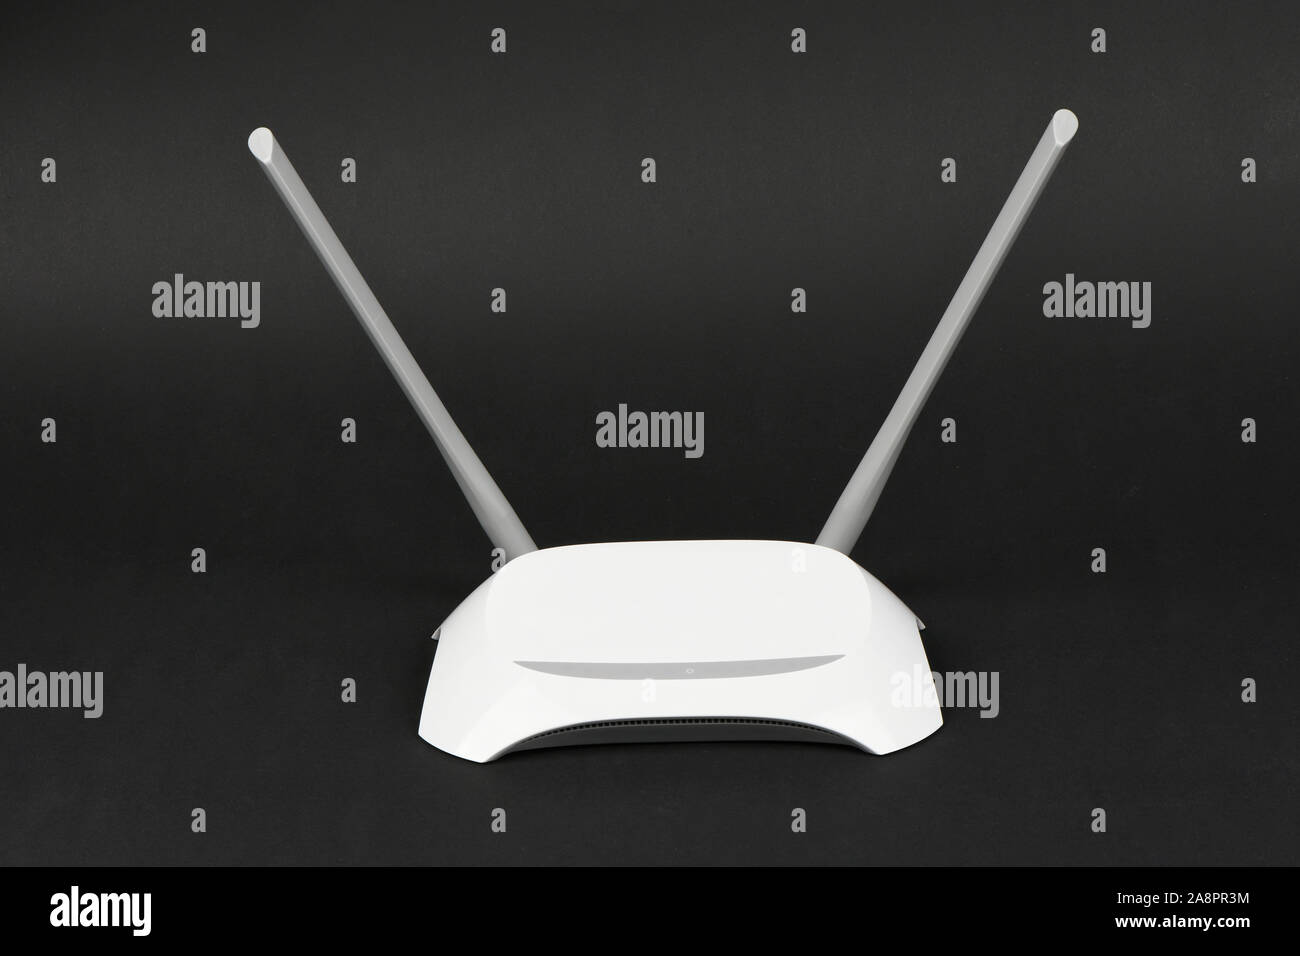 Router wifi rectangular realista con dos antenas en los lados aisladas  sobre blanco. Diodos verdes y rojos en una caja gris. Dispositivo para  distribución inalámbrica Fotografía de stock - Alamy